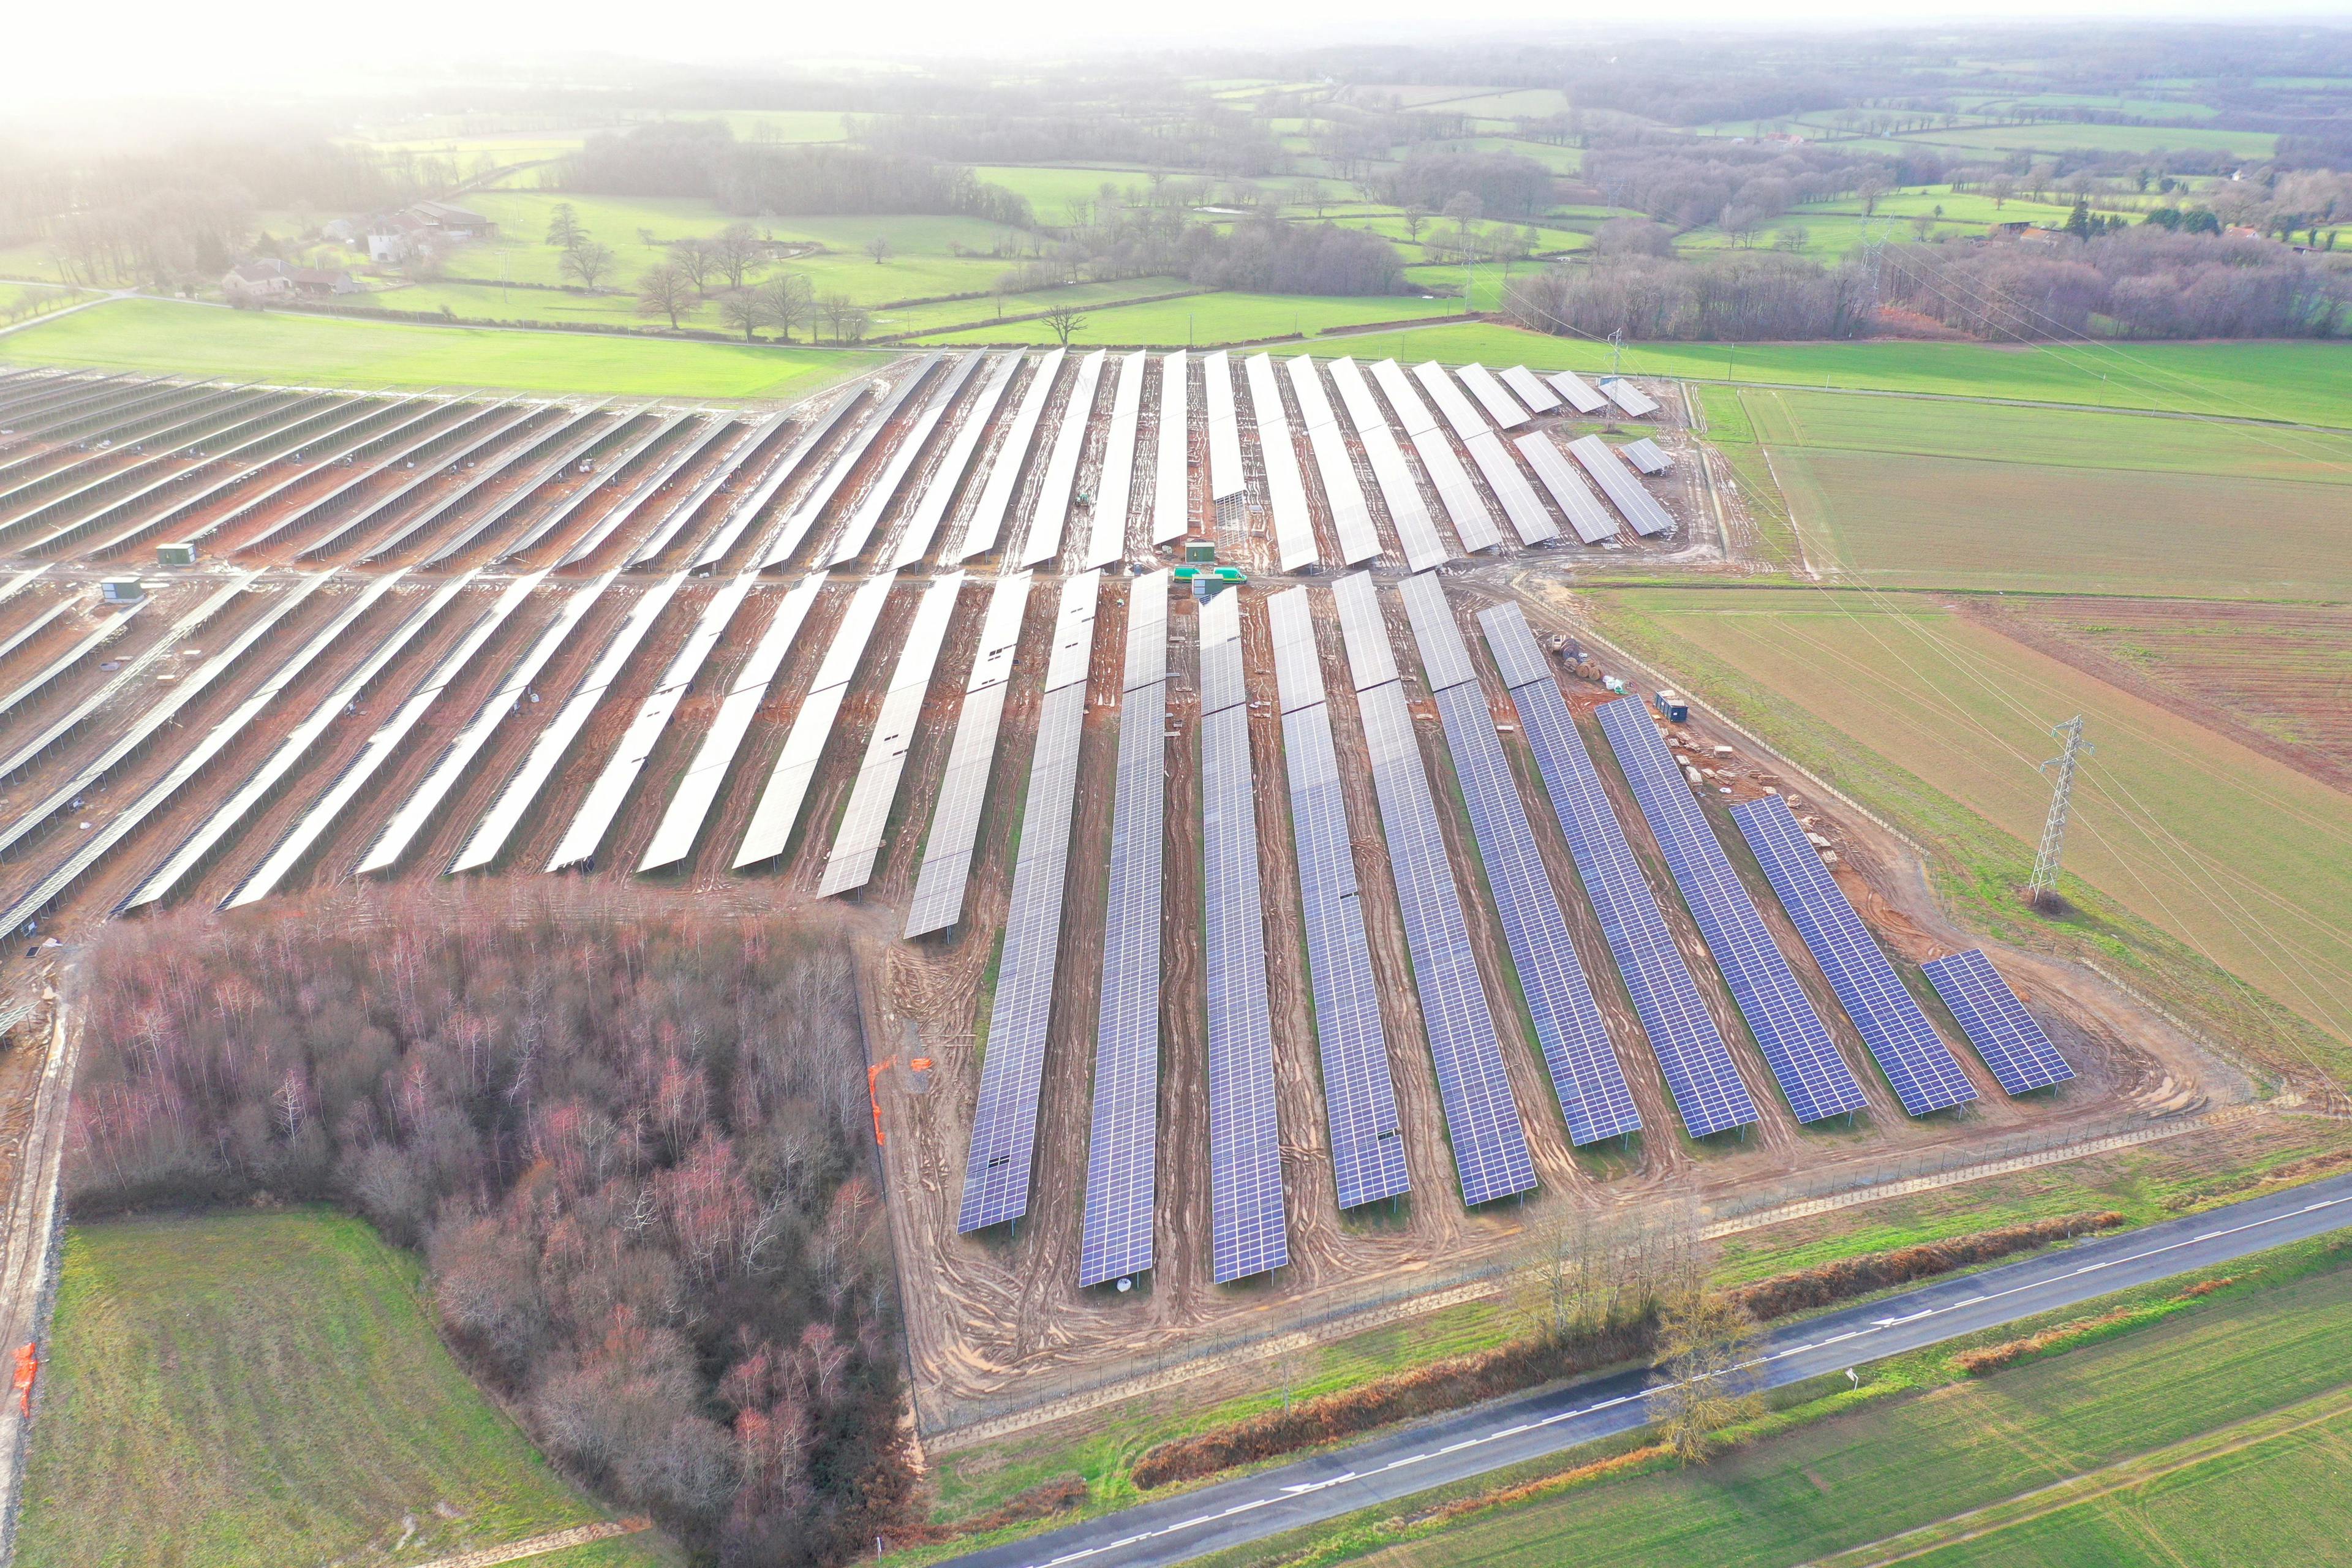 Baraize freefield project in France, taken by drone